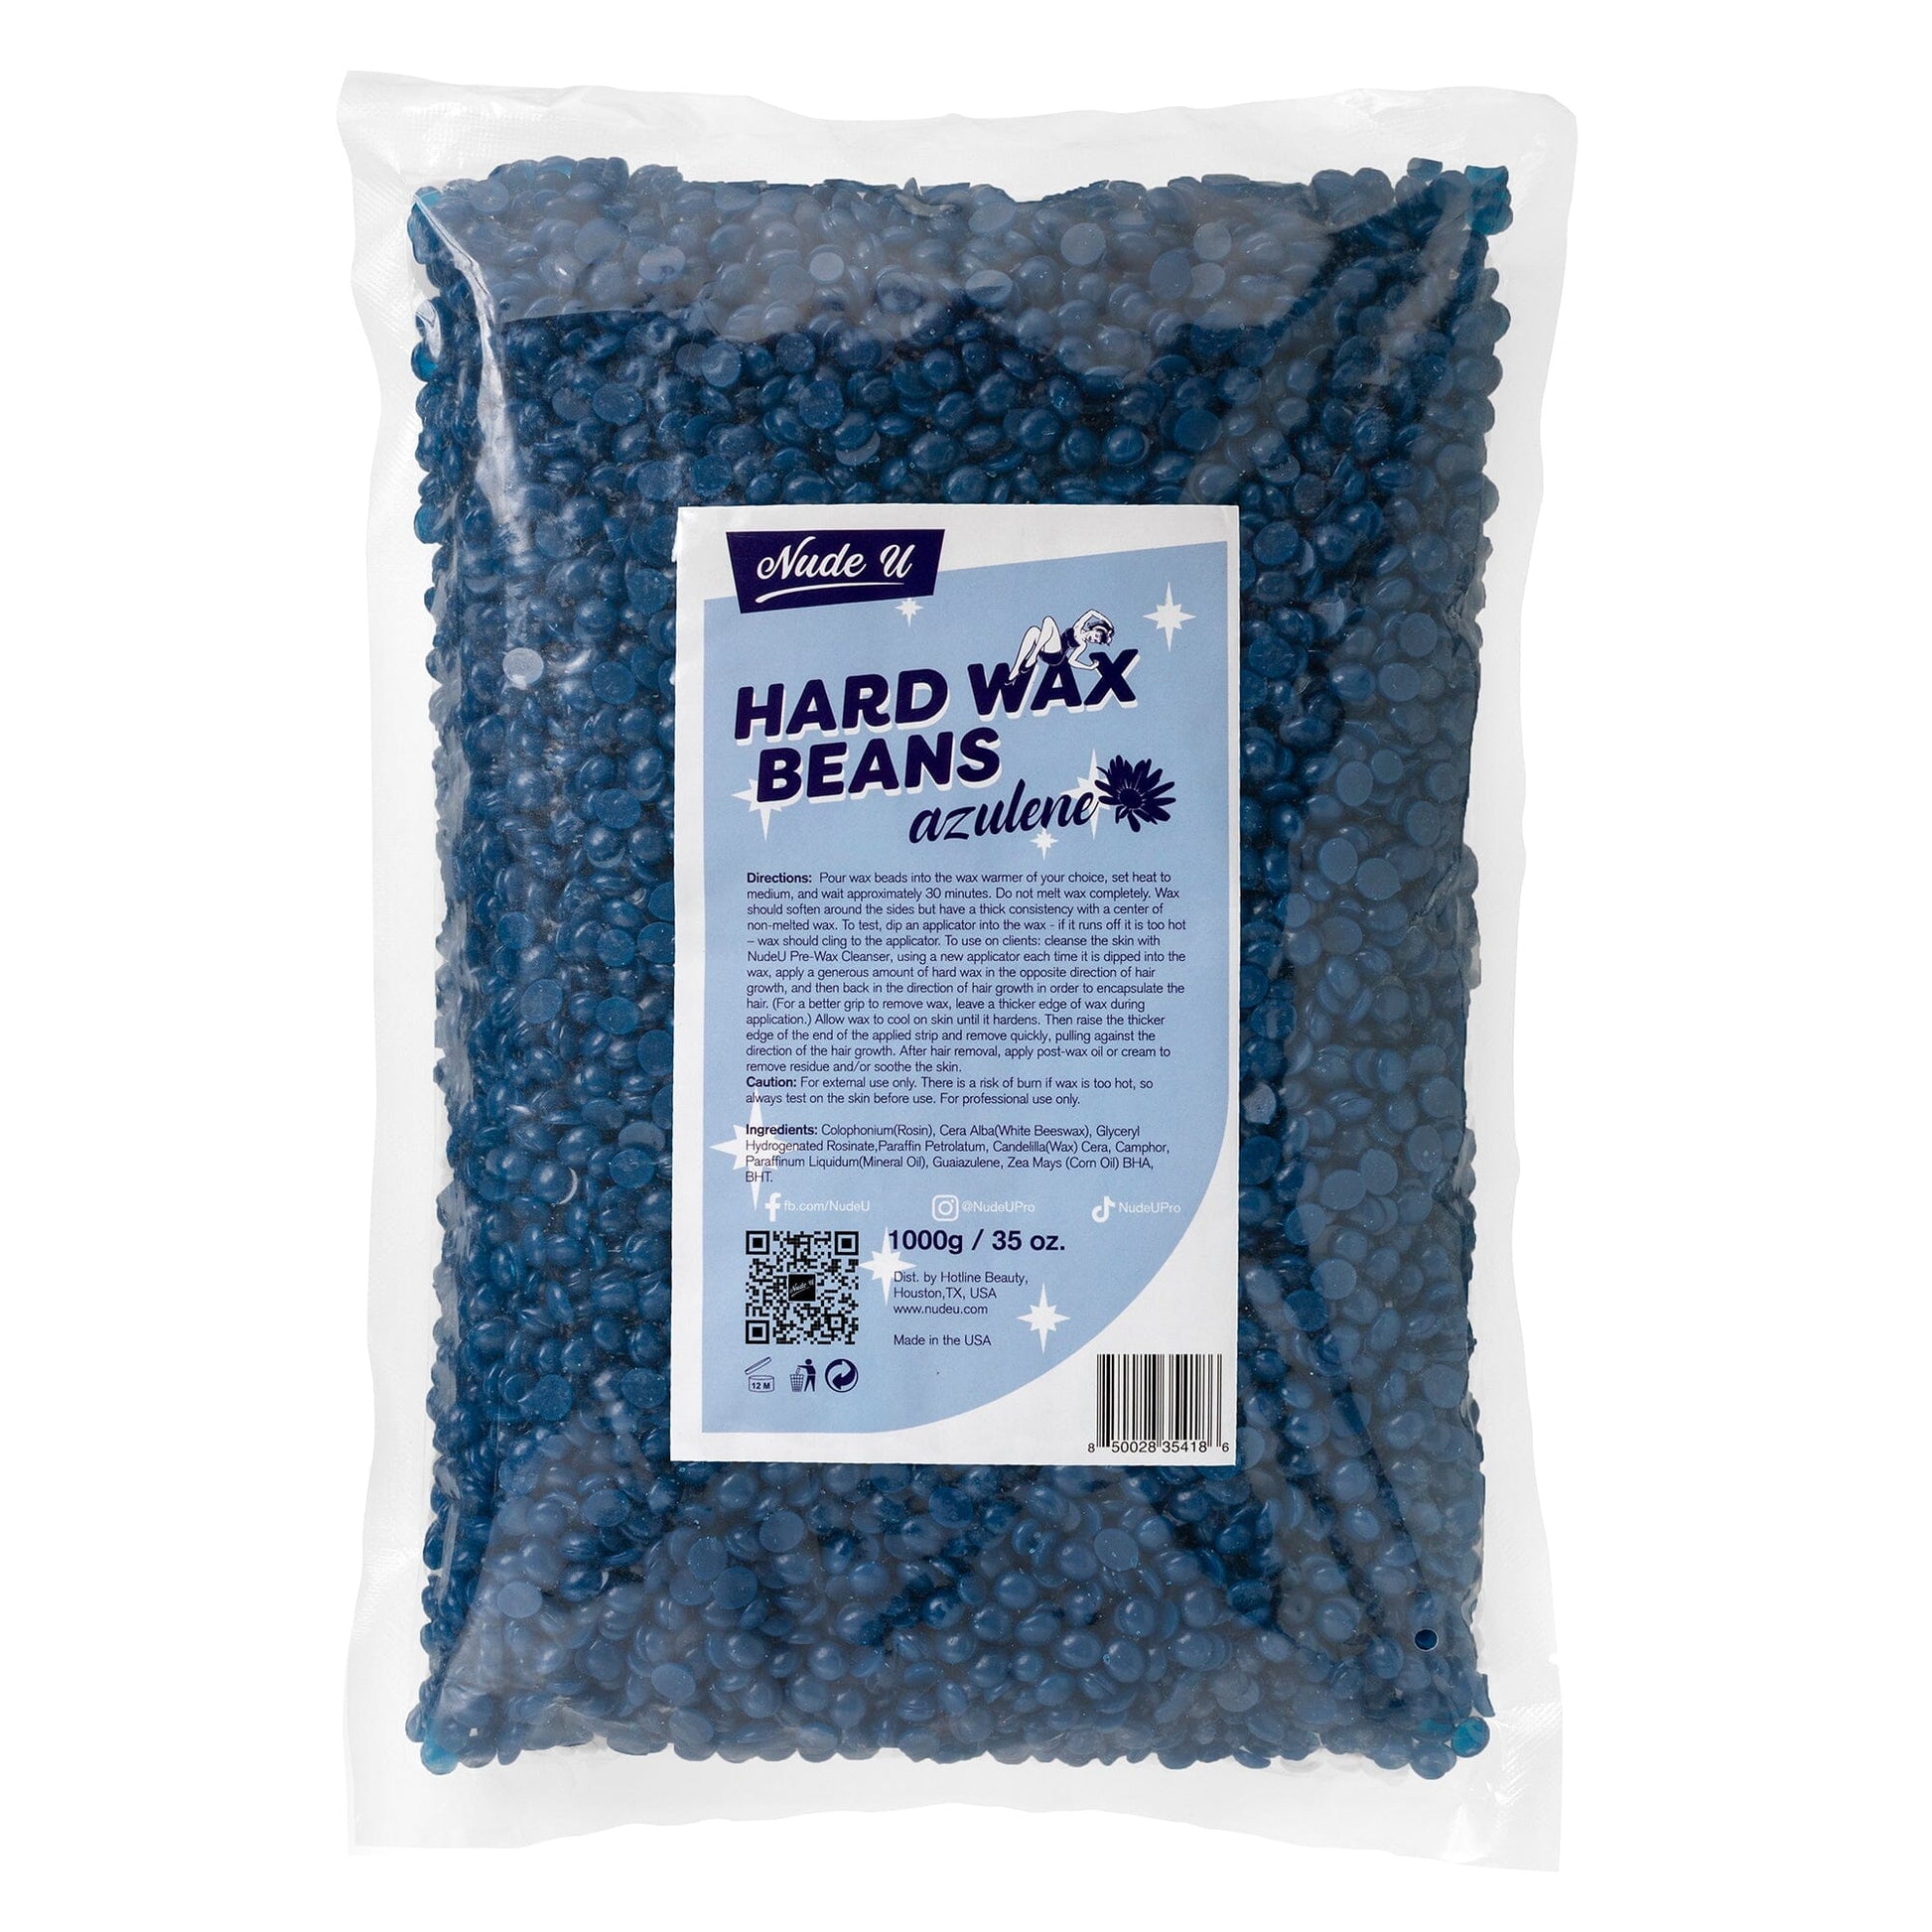 Hard Wax Beans | Azulene | NUDE U Waxing Kits & Supplies NUDE U 35oz / 1000g 